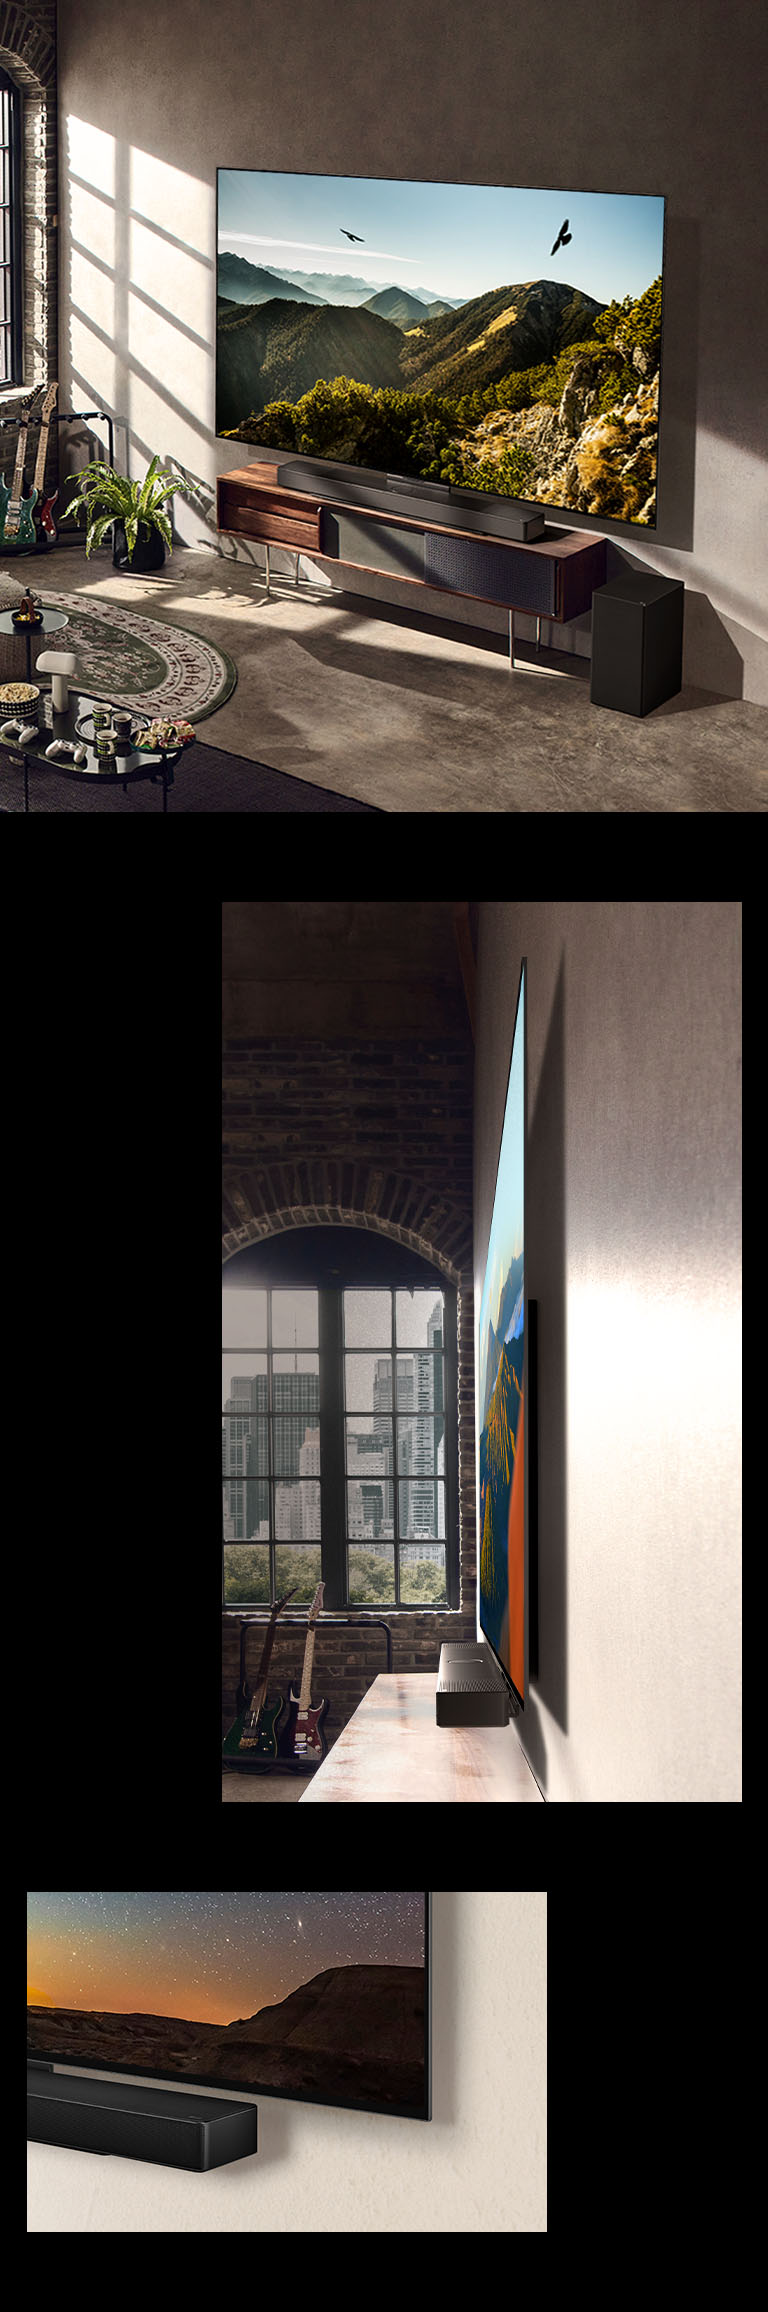 Obrázek televizoru LG OLED C3 se soundbarem na stěně v umělecky laděné místnosti. Boční pohled na tenký design televizoru LG OLED C3 před oknem s výhledem na panoráma města. Spodní roh televizoru LG OLED C3 a soundbaru.